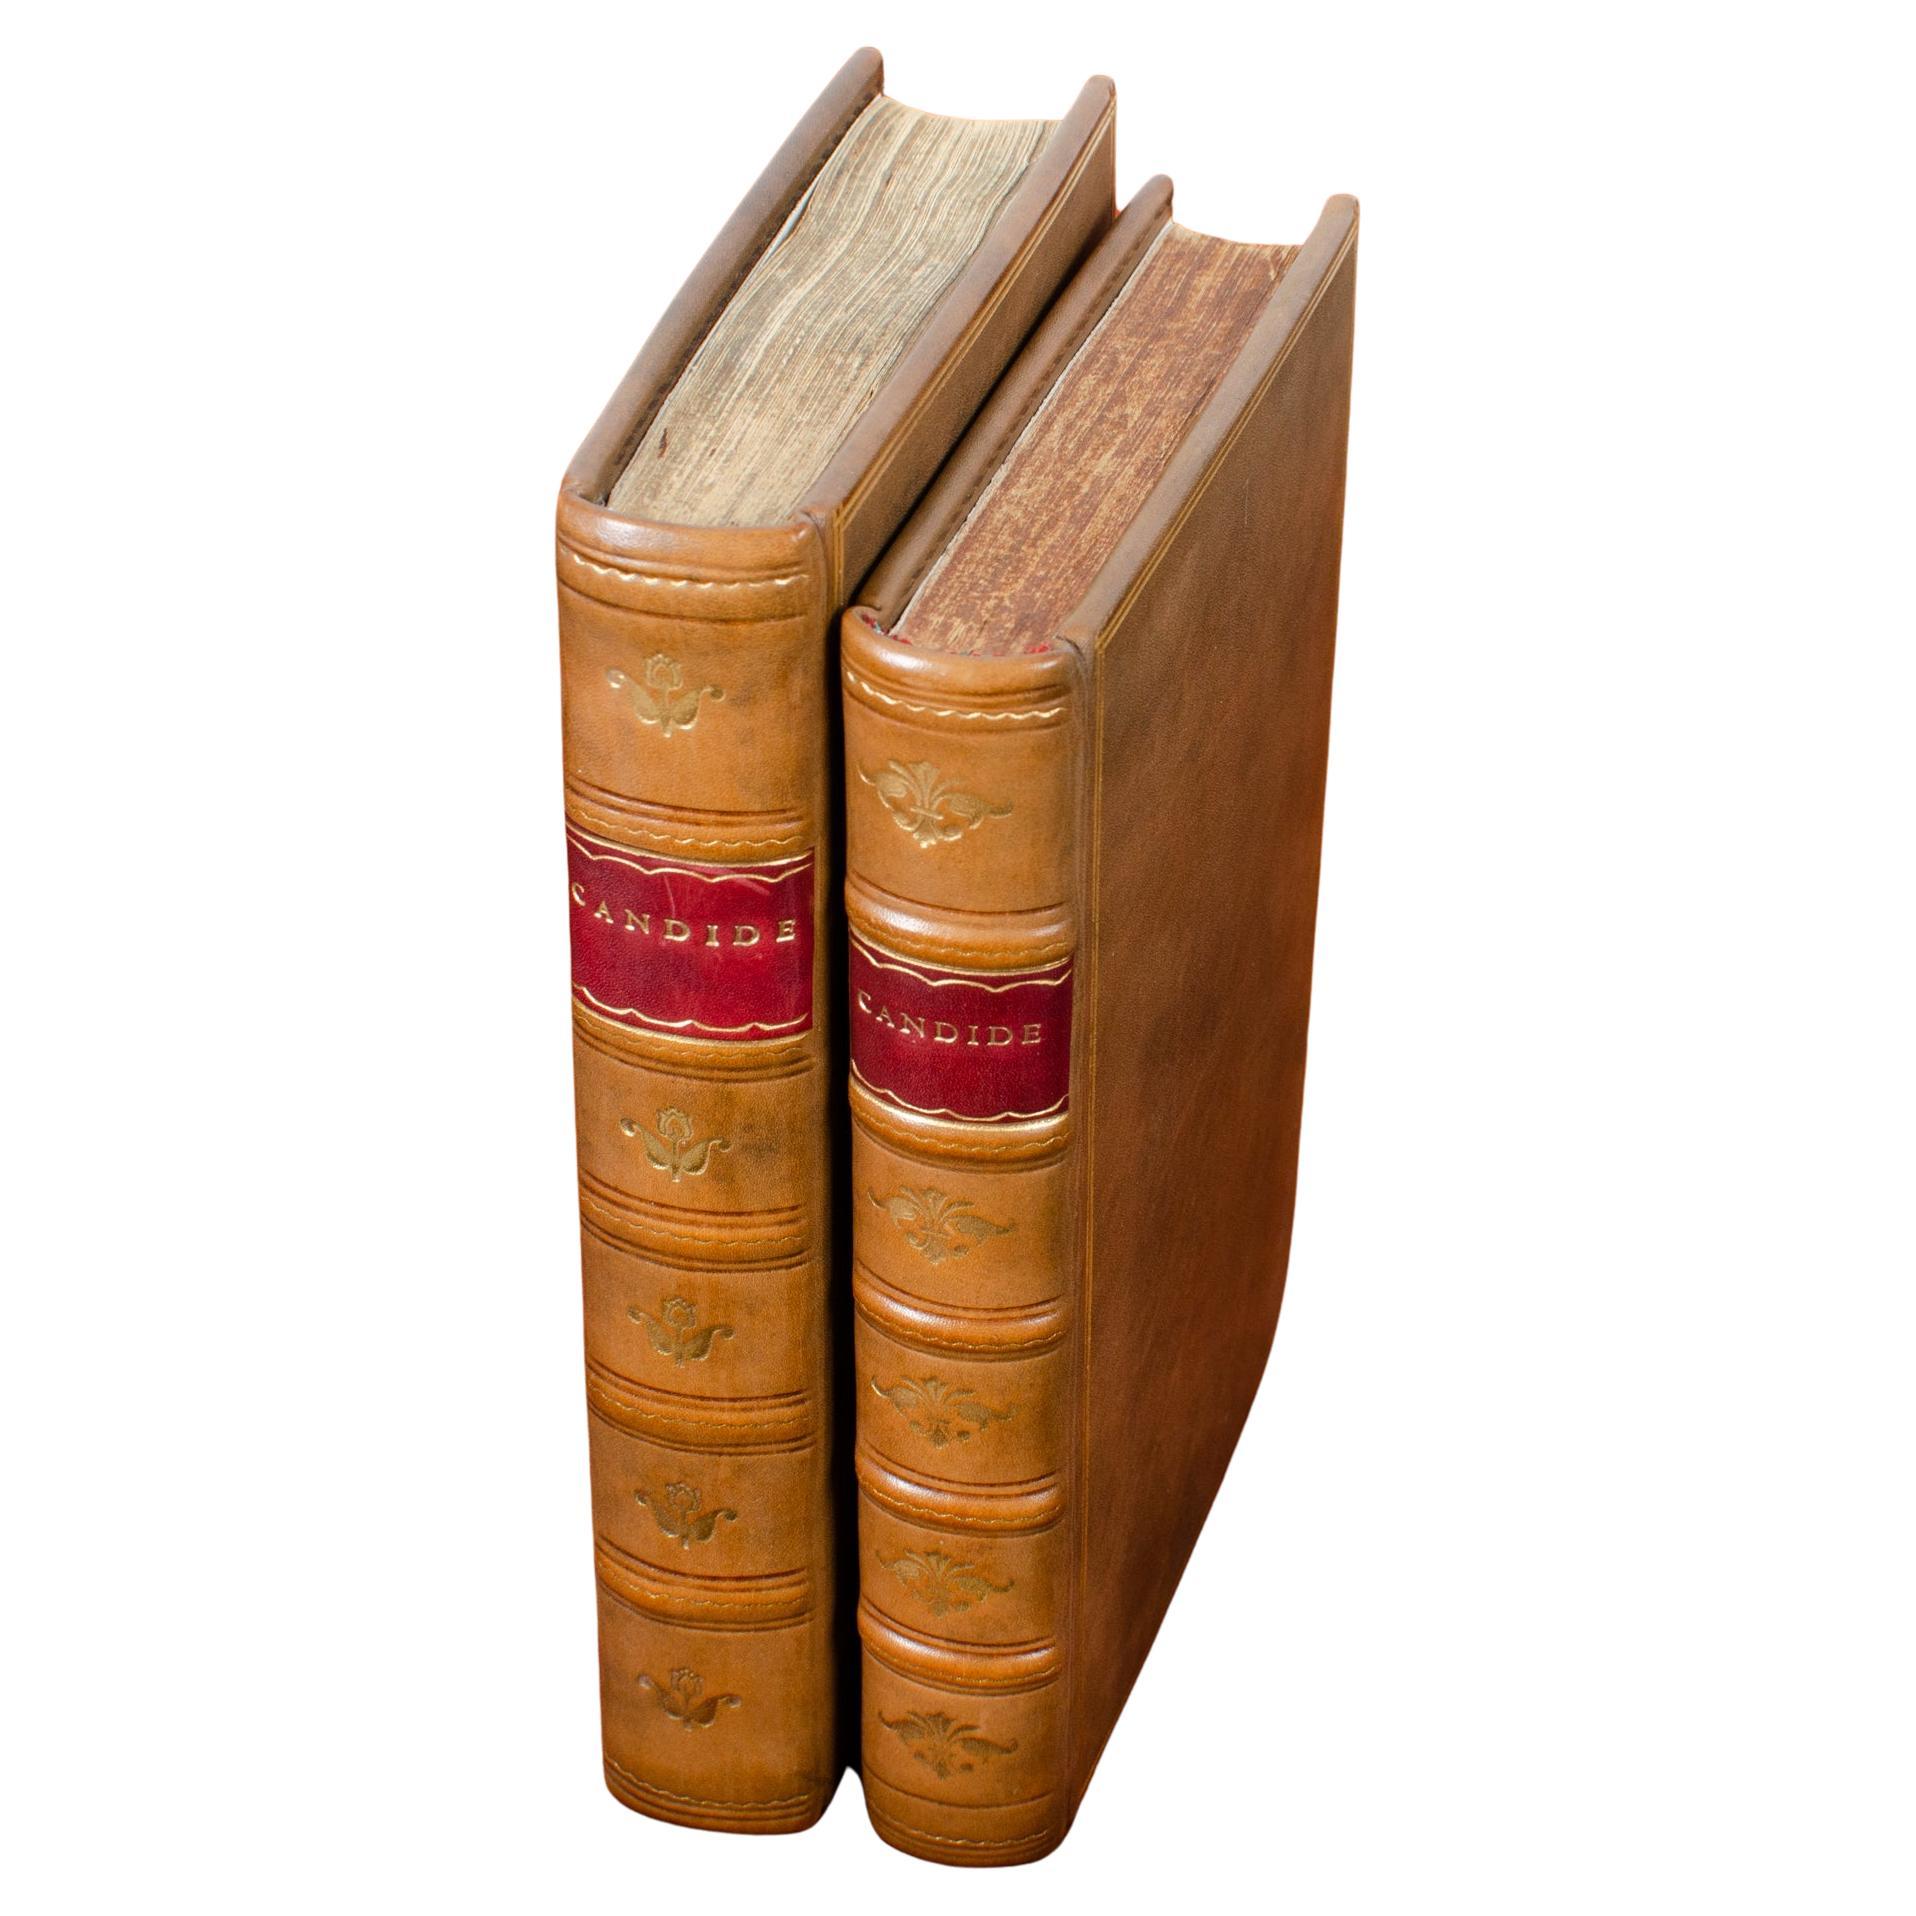 Voltaire Candide True première édition et première édition londonienne